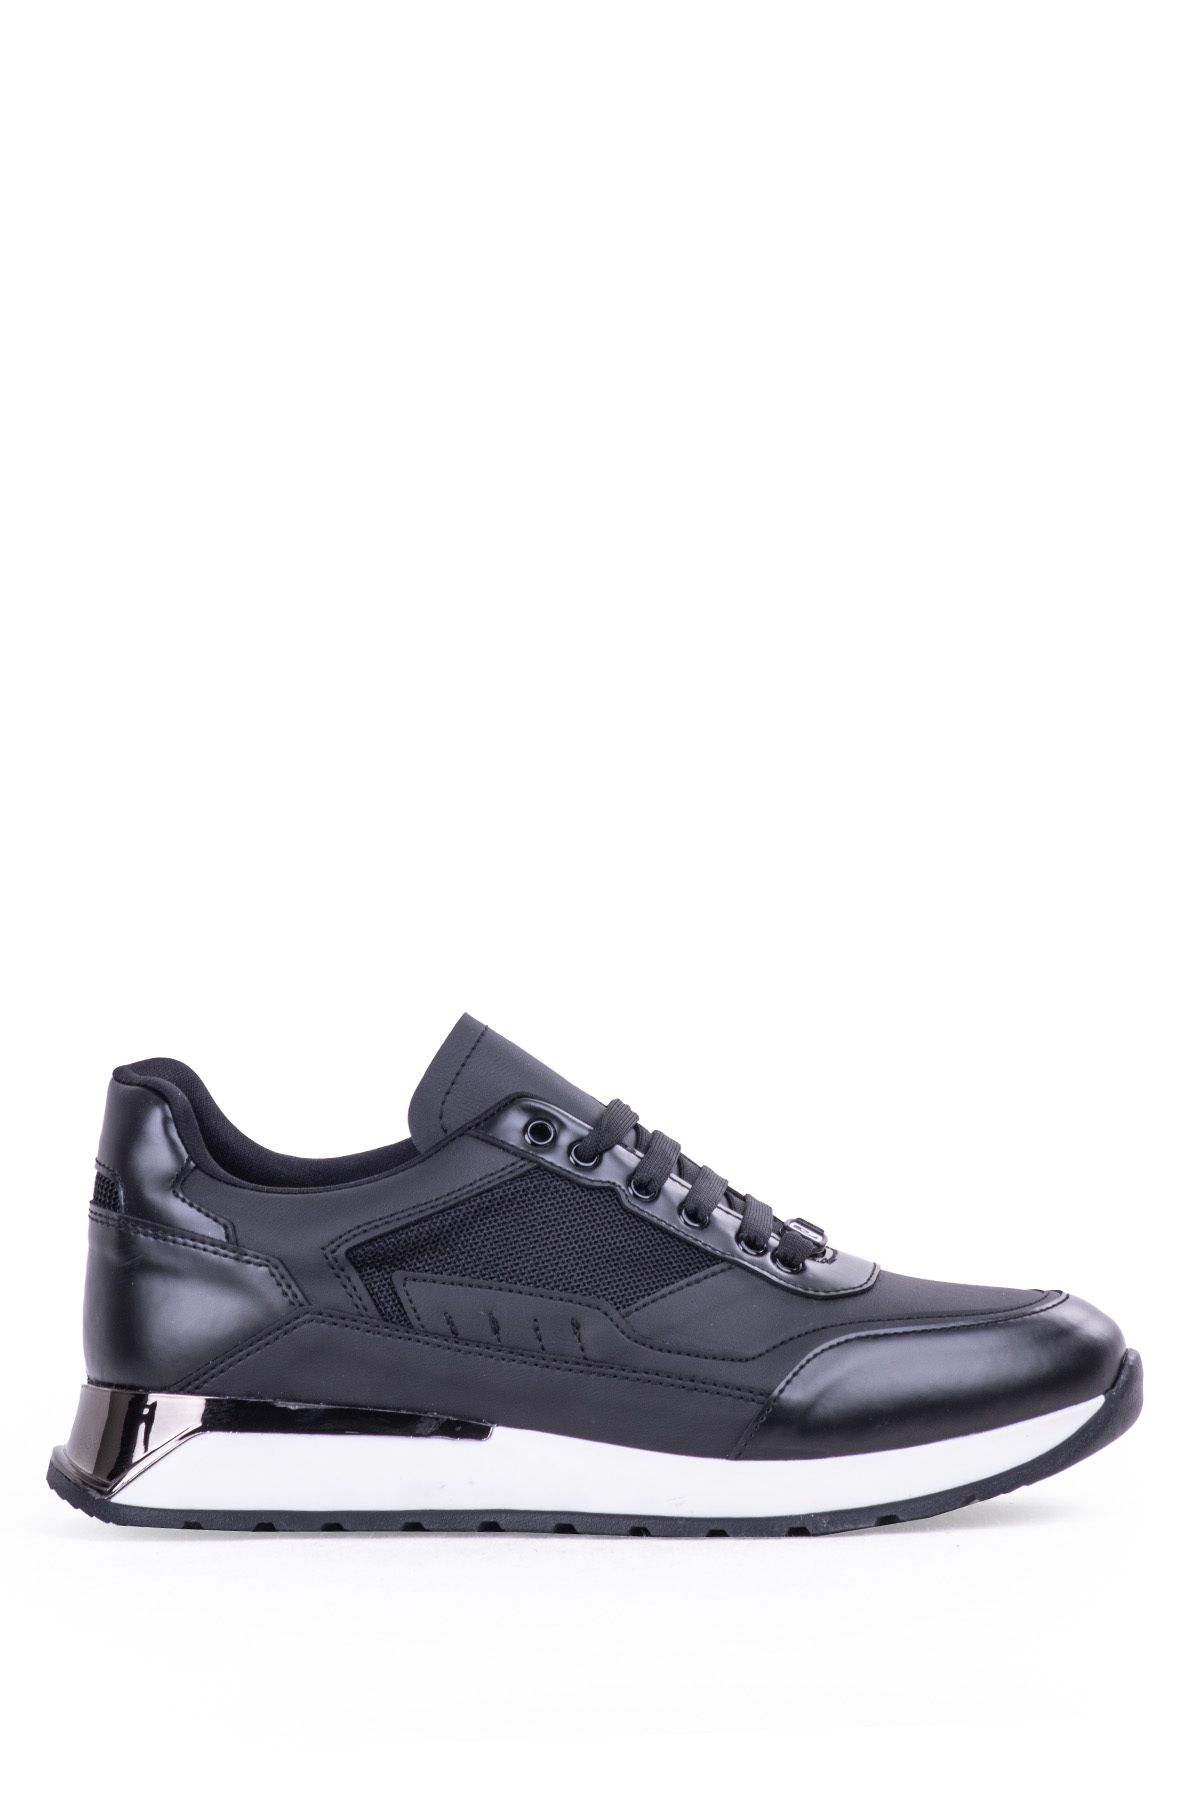 Pierre Cardin 28216 Erkek Klasik Sneaker Ayakkabı